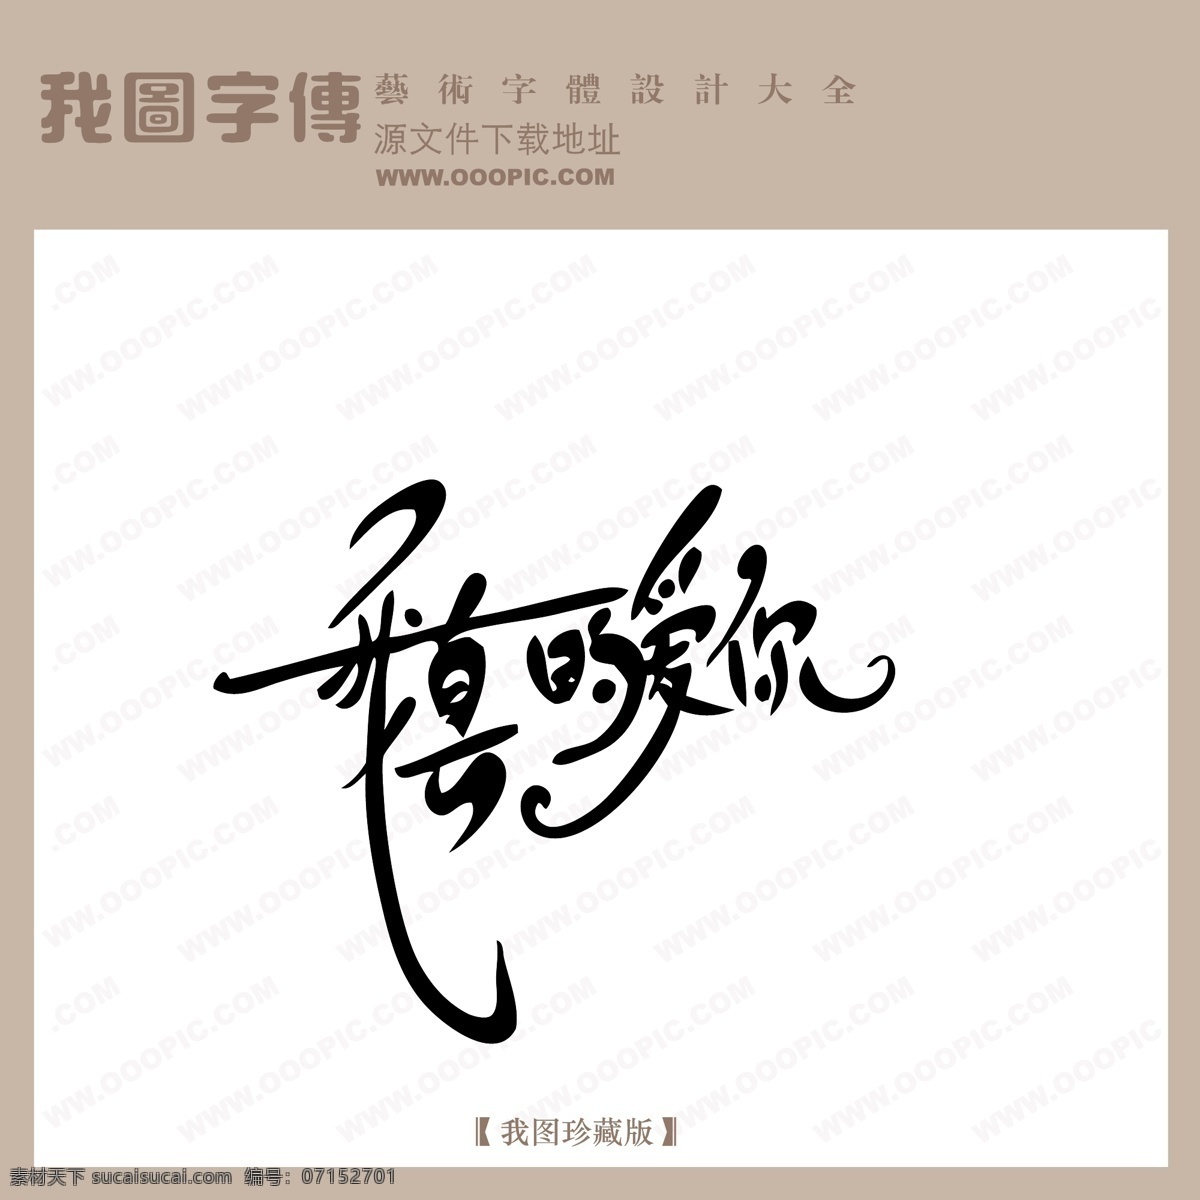 真的 爱你 中文 现代艺术 字 创意 美工 艺术 中国字体下载 我真的爱你 矢量图